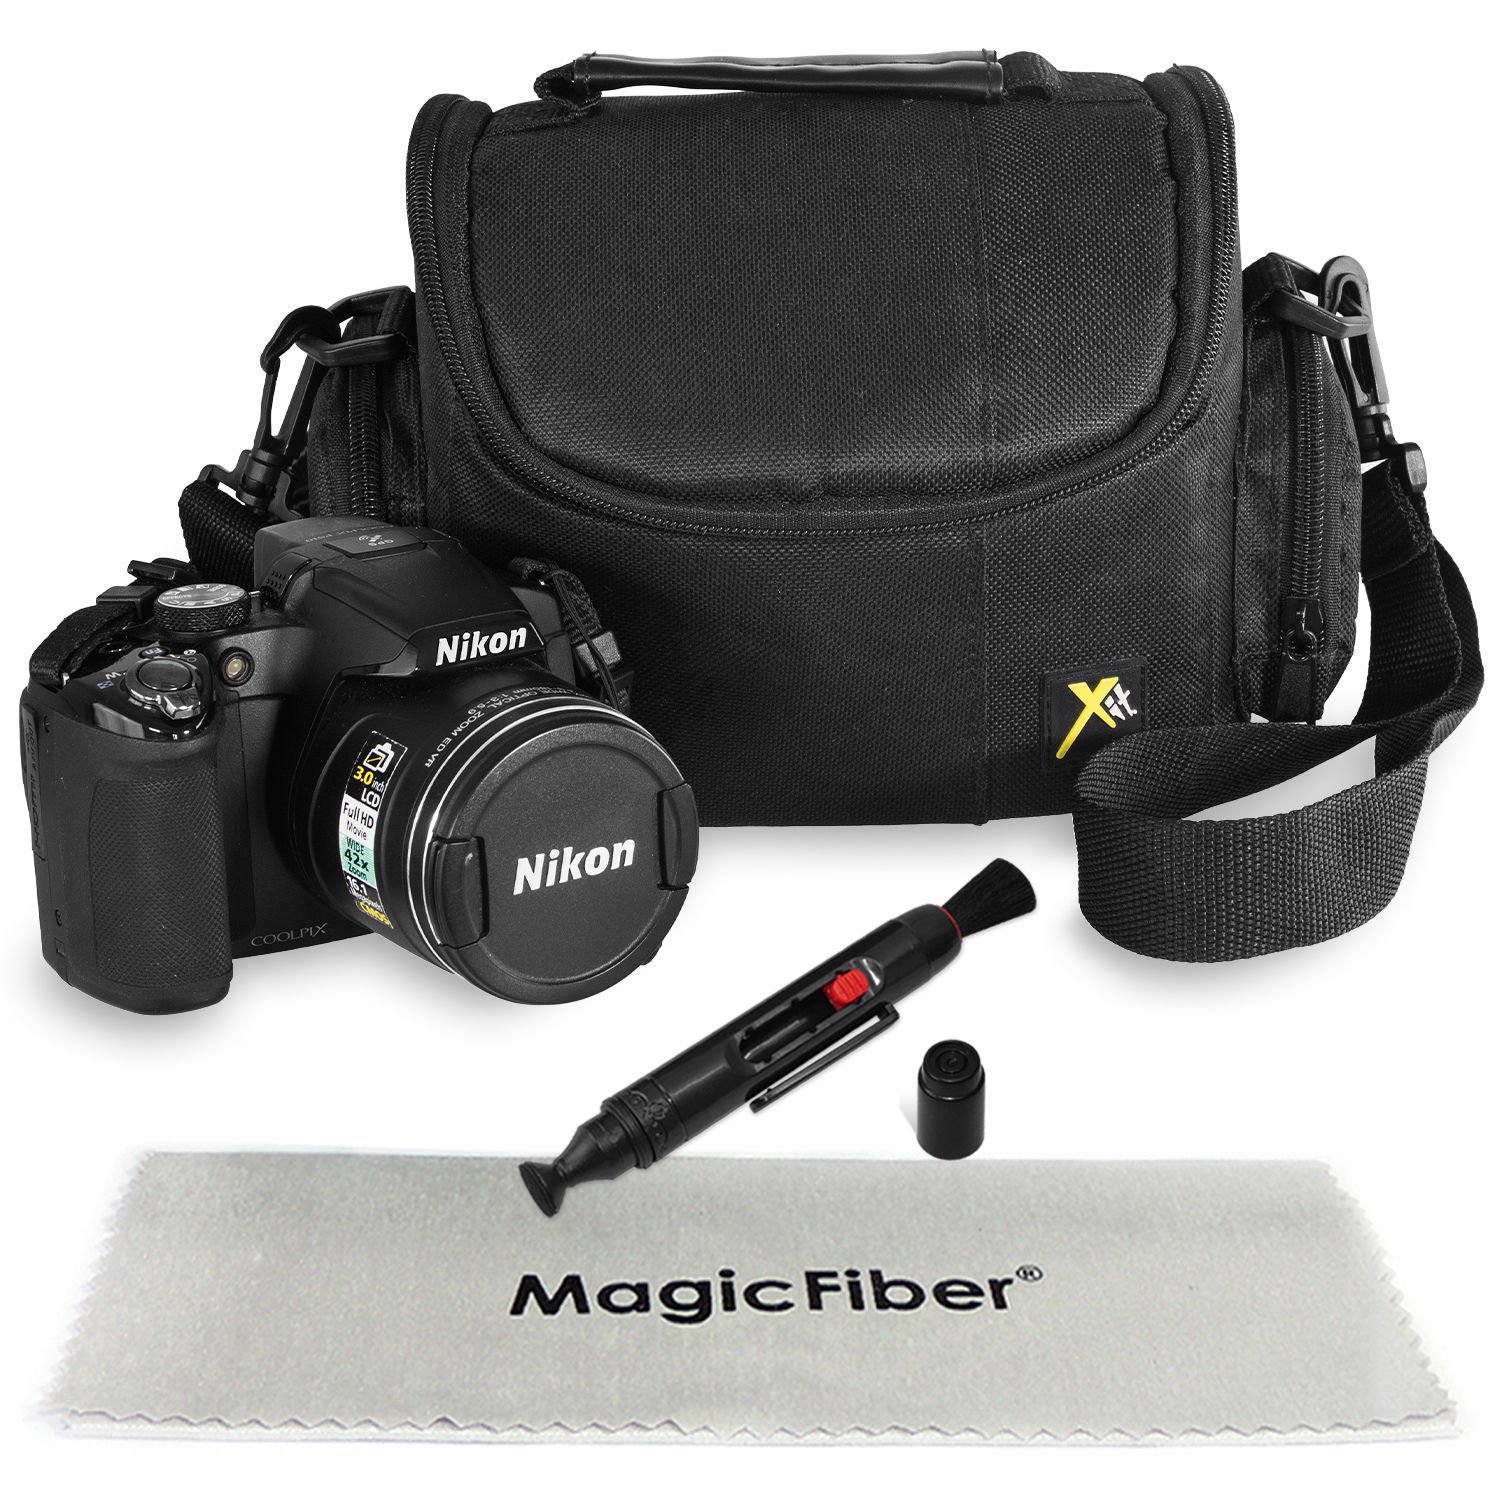 New Camera Bag Case for Nikon Coolpix P530 P520 P510 L830 L820 L810